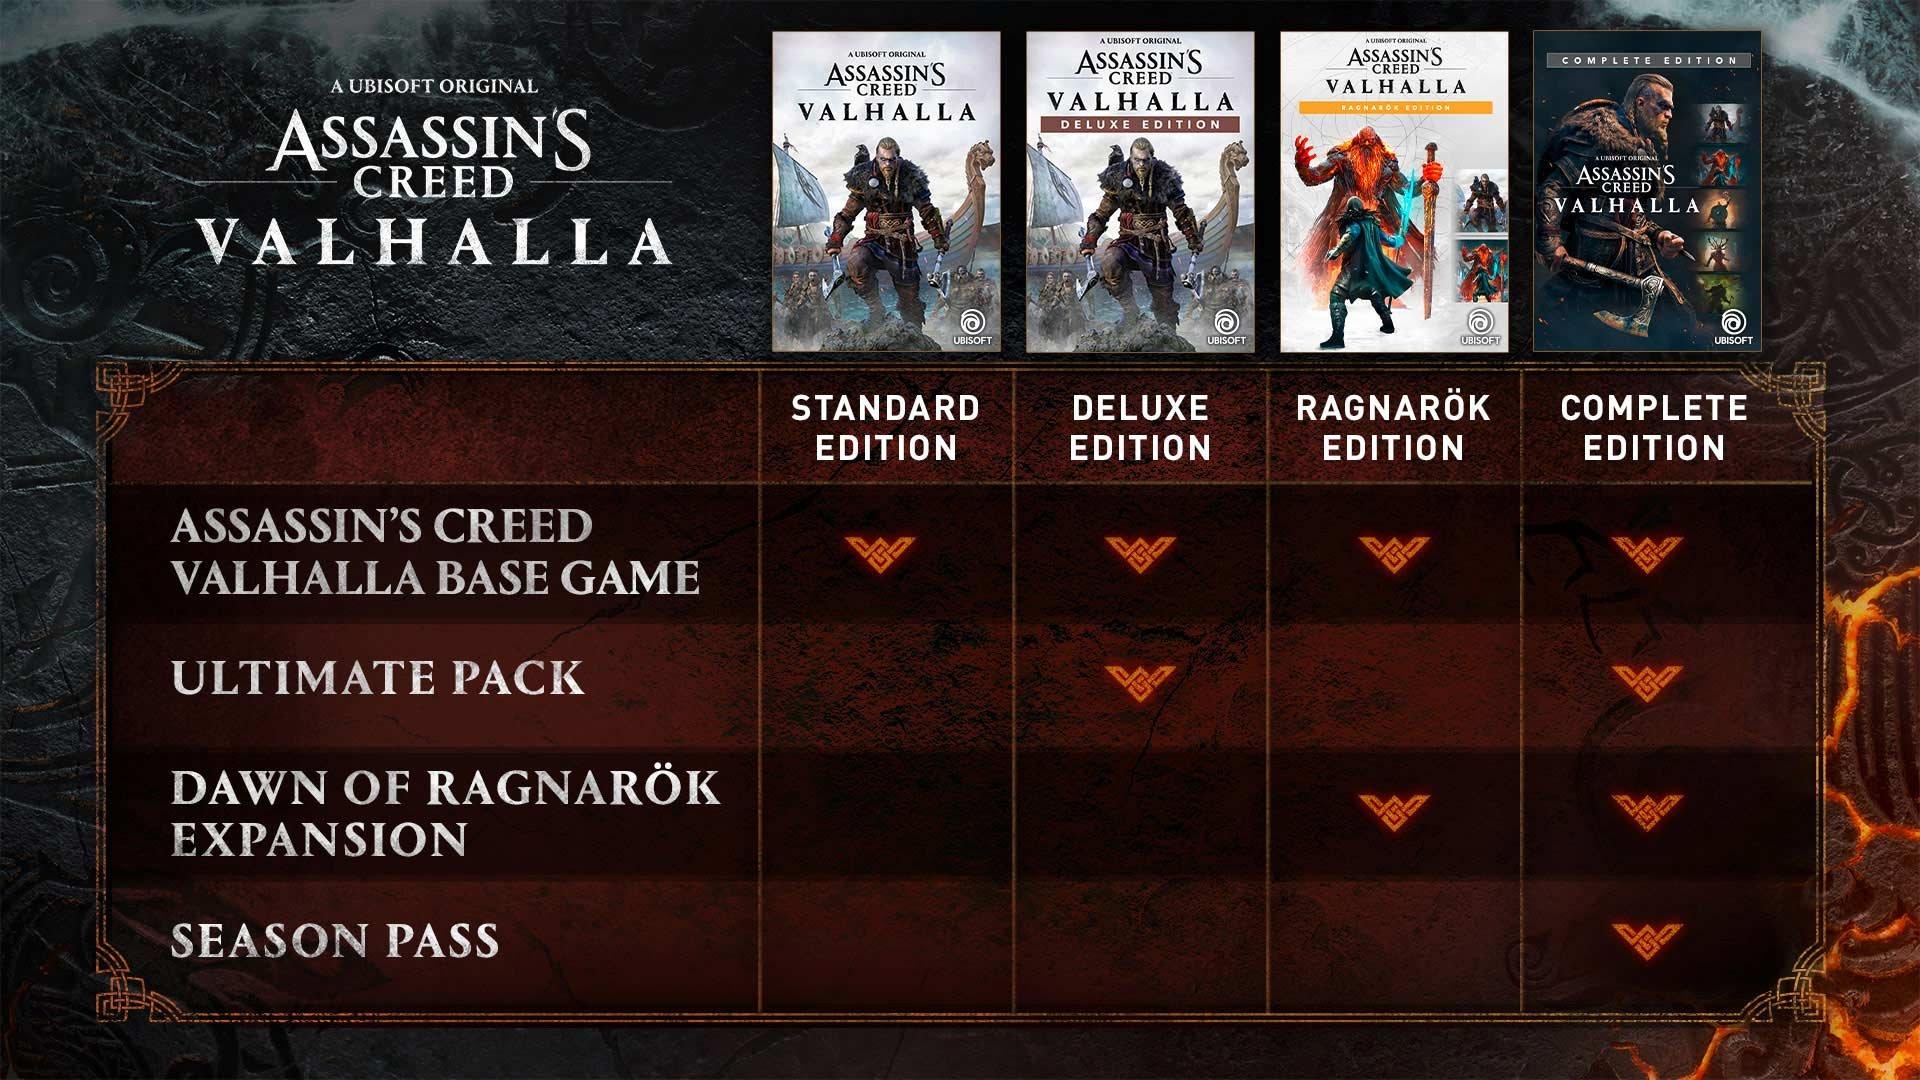 Assassin's Creed Valhalla - PC Digital